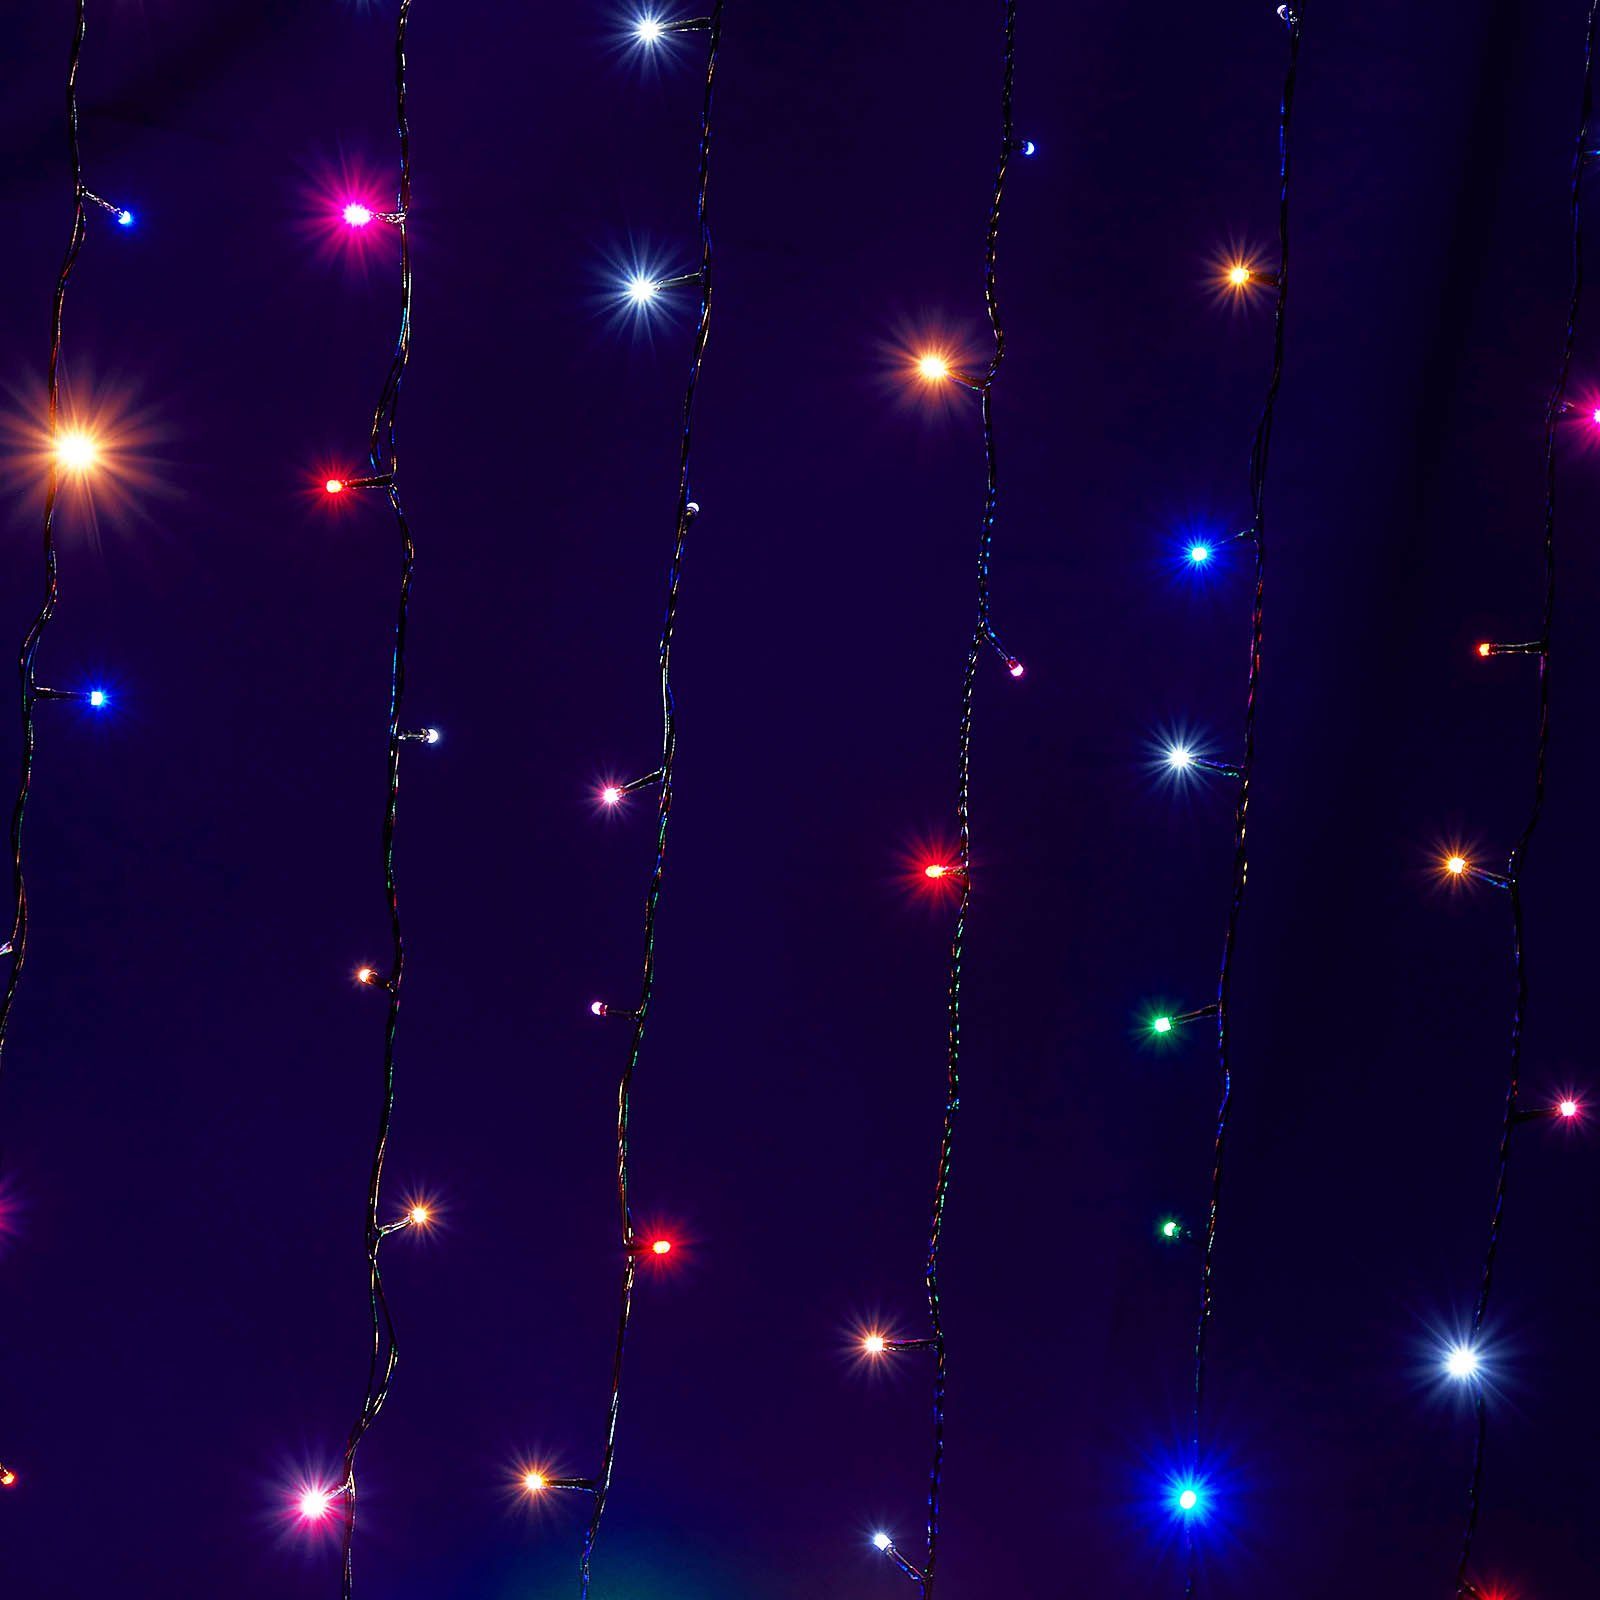 Rosnek LED-Baummantel Außen 156-flammig Garten 20m LED Innen Weihnachten Baum, Mehrfarbig Lichterkette for Party